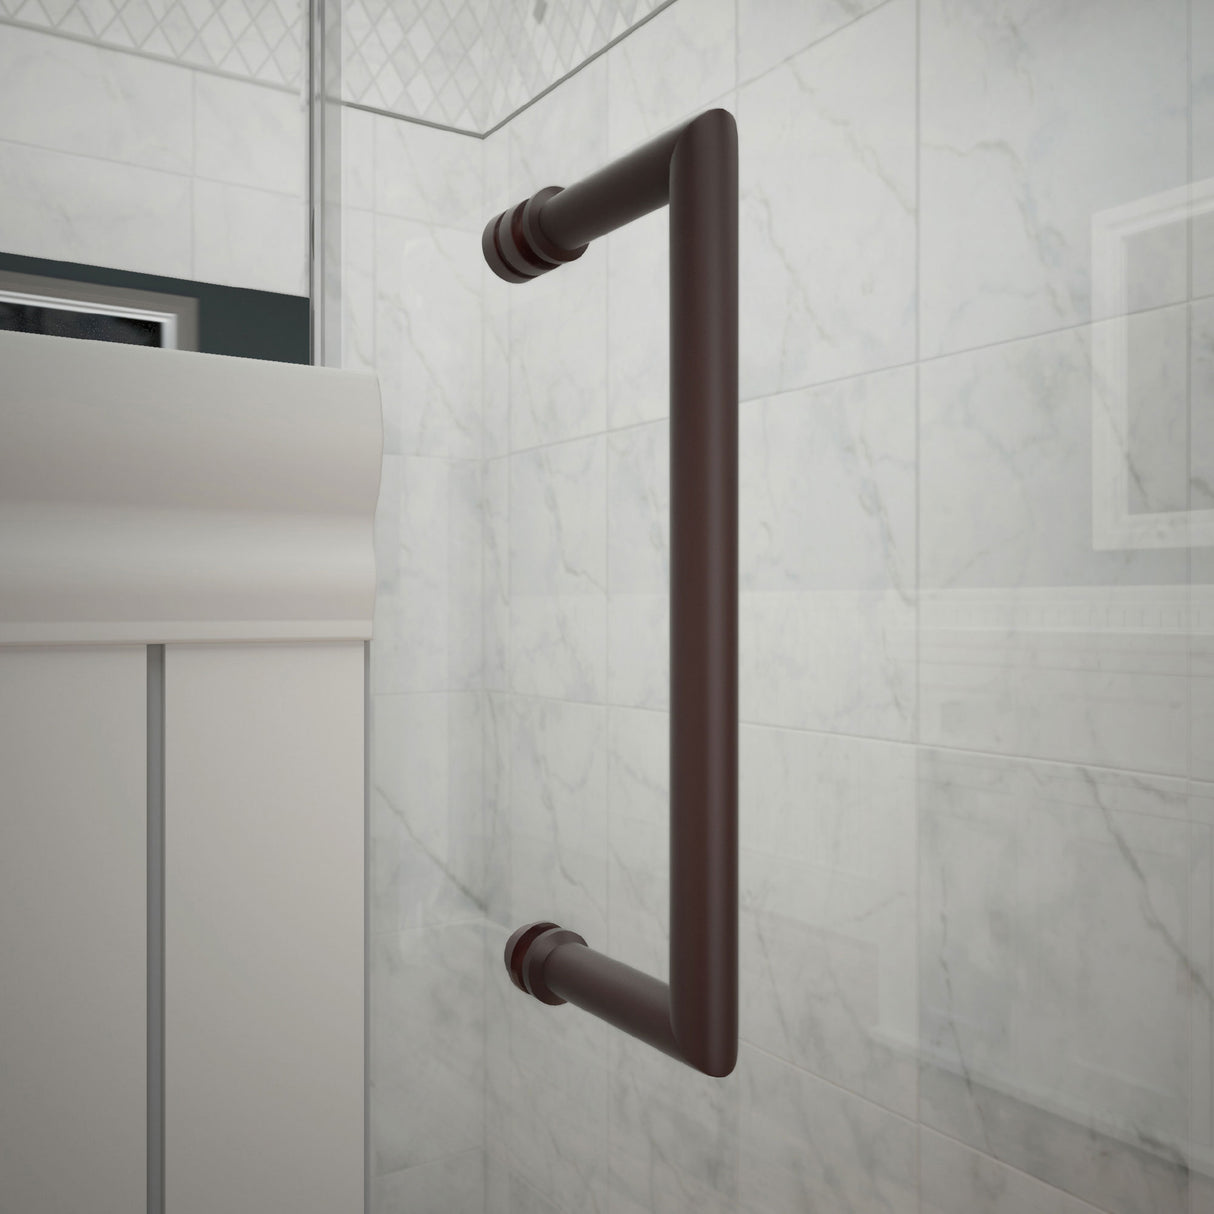 DreamLine Unidoor 55-56 in. W x 72 in. H Frameless Hinged Shower Door with Shelves in Oil Rubbed Bronze